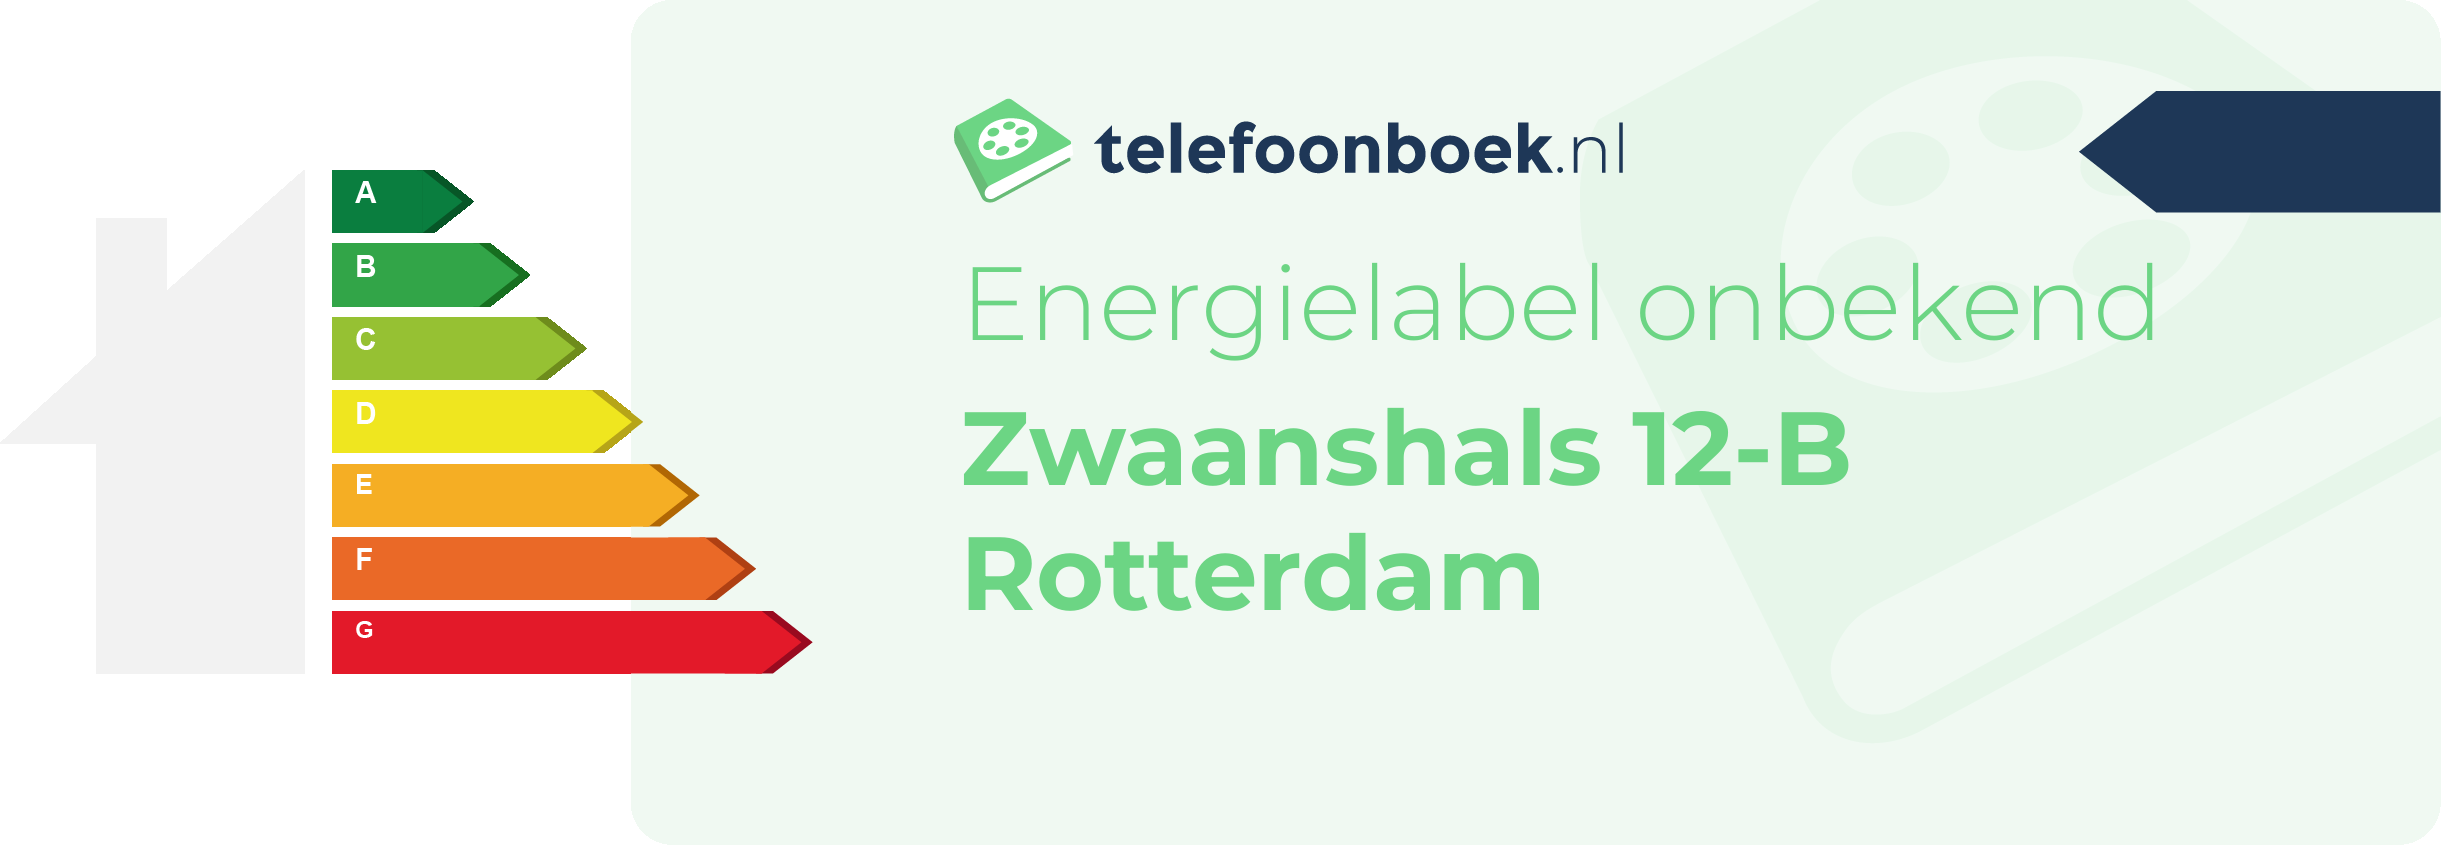 Energielabel Zwaanshals 12-B Rotterdam